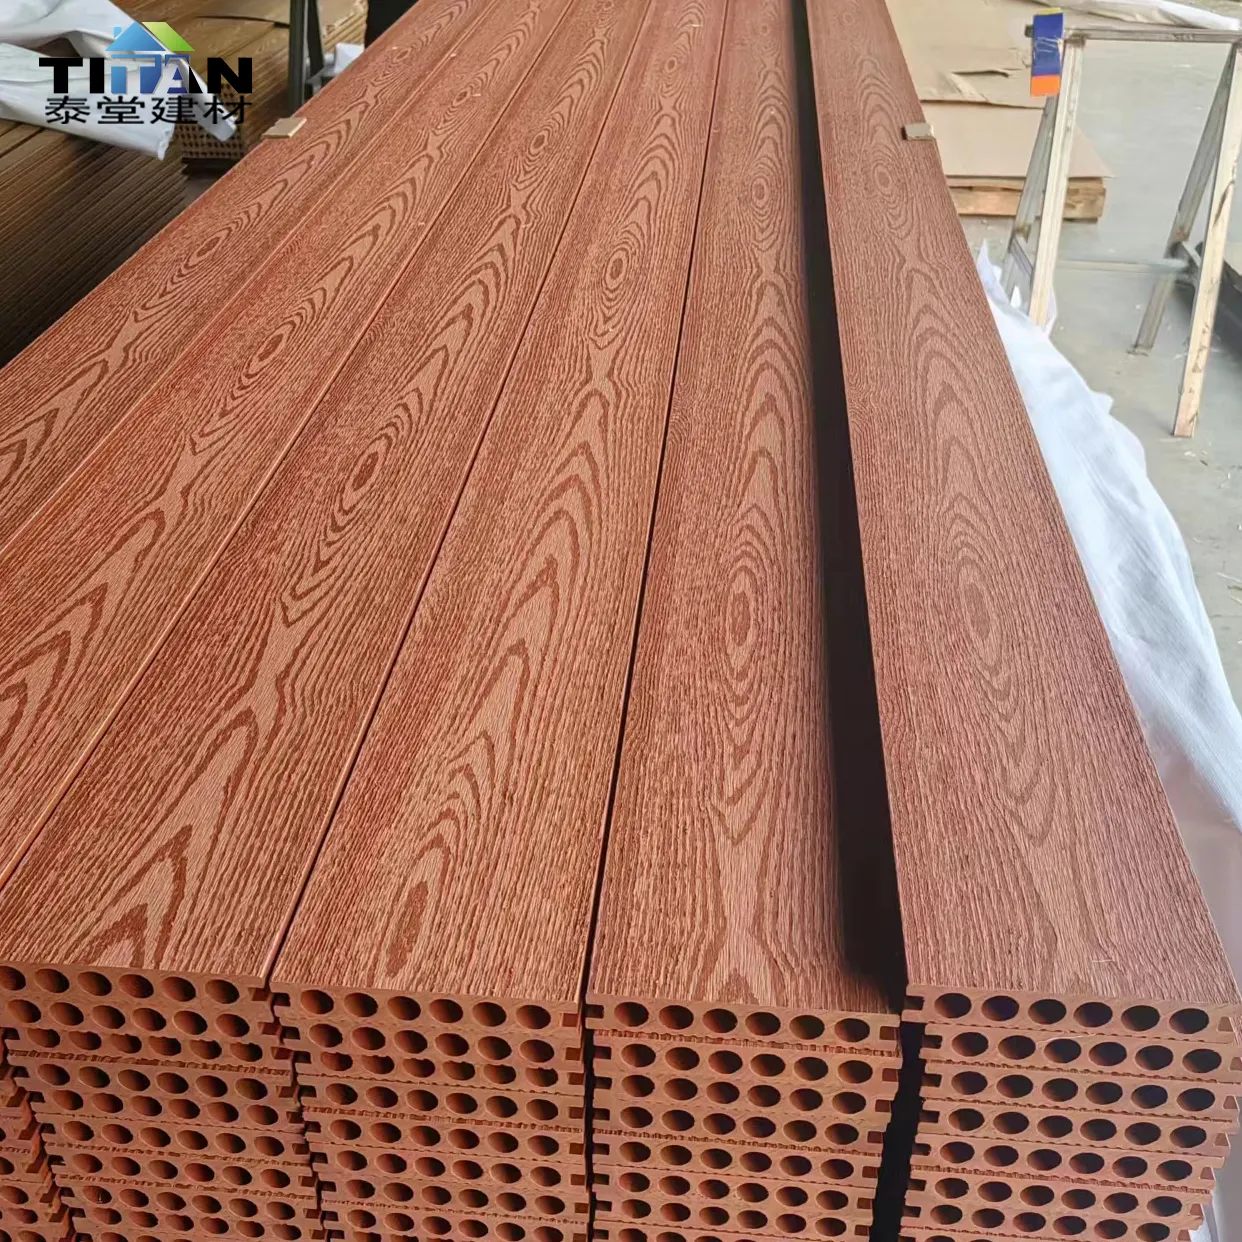 Piso de madeira sintética laminado Suelo Wpc para exterior Wpc de acabamento liso